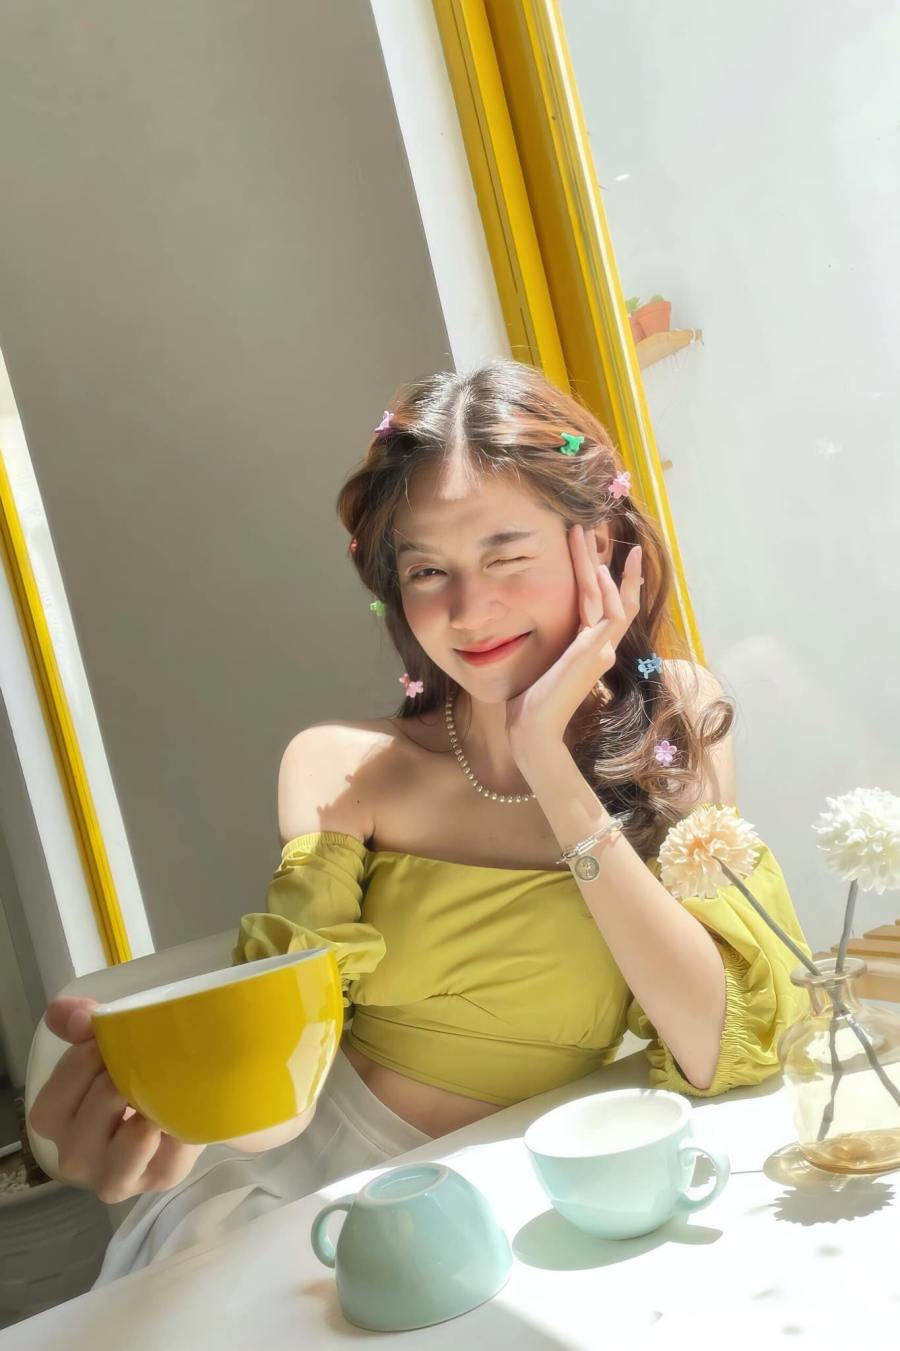 Tân Hoa hậu Việt Nam xuống phố đón năm mới với chiếc áo hở rốn, quần ngắn “chất chơi” - 7